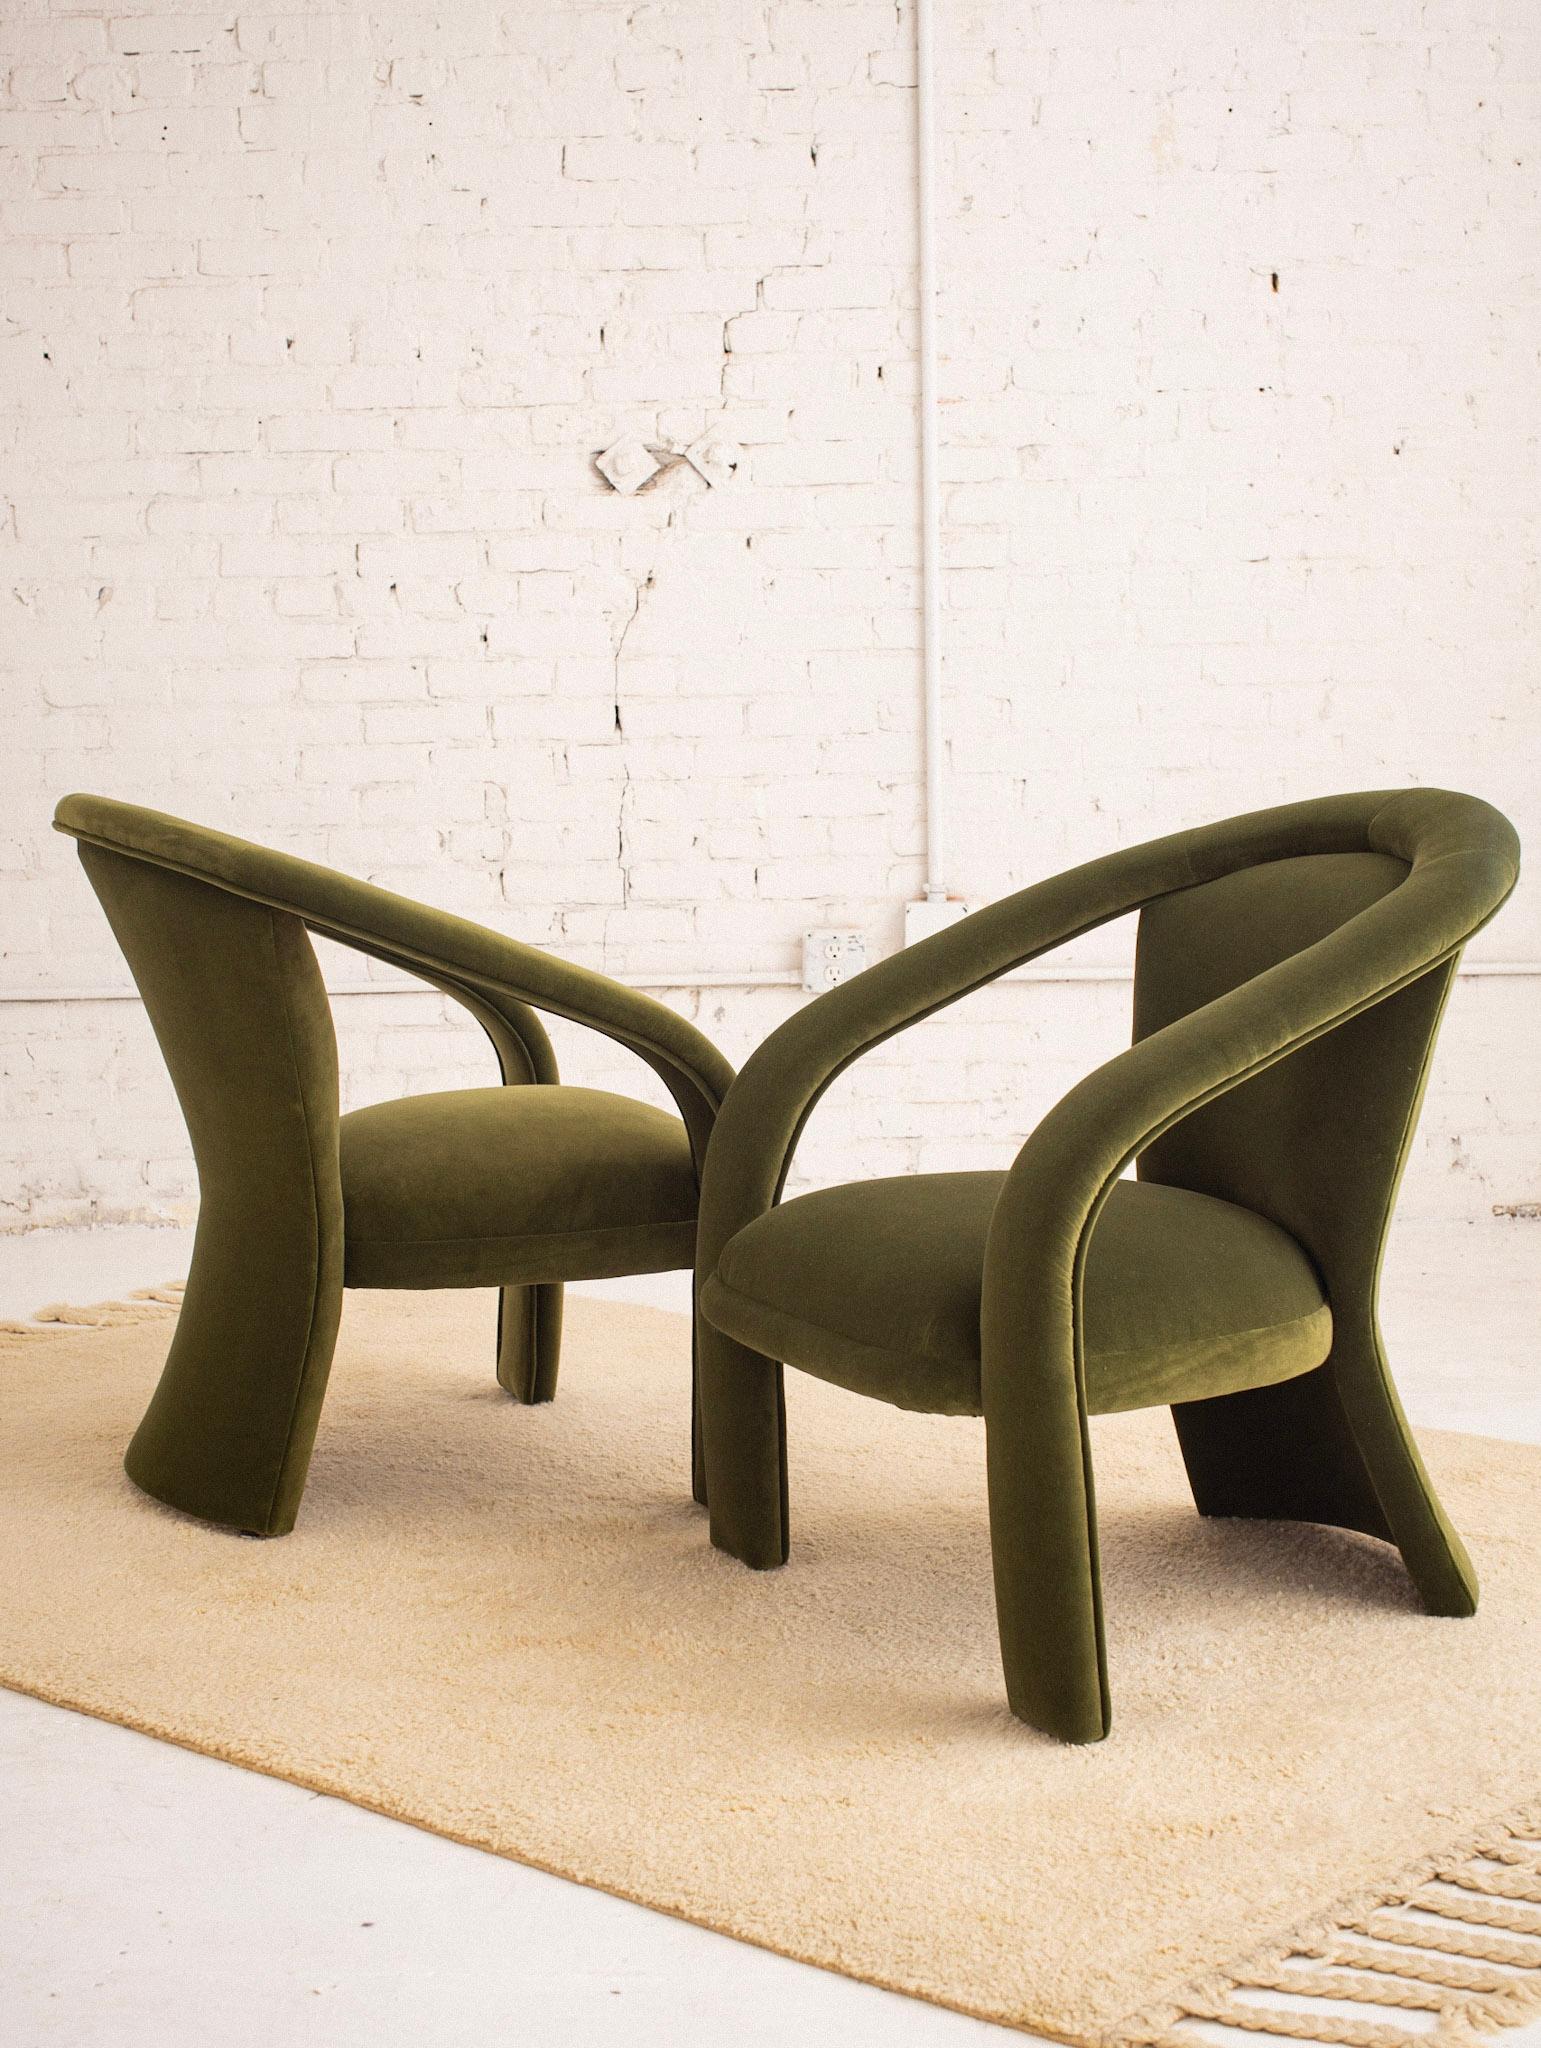 sculptural furniture